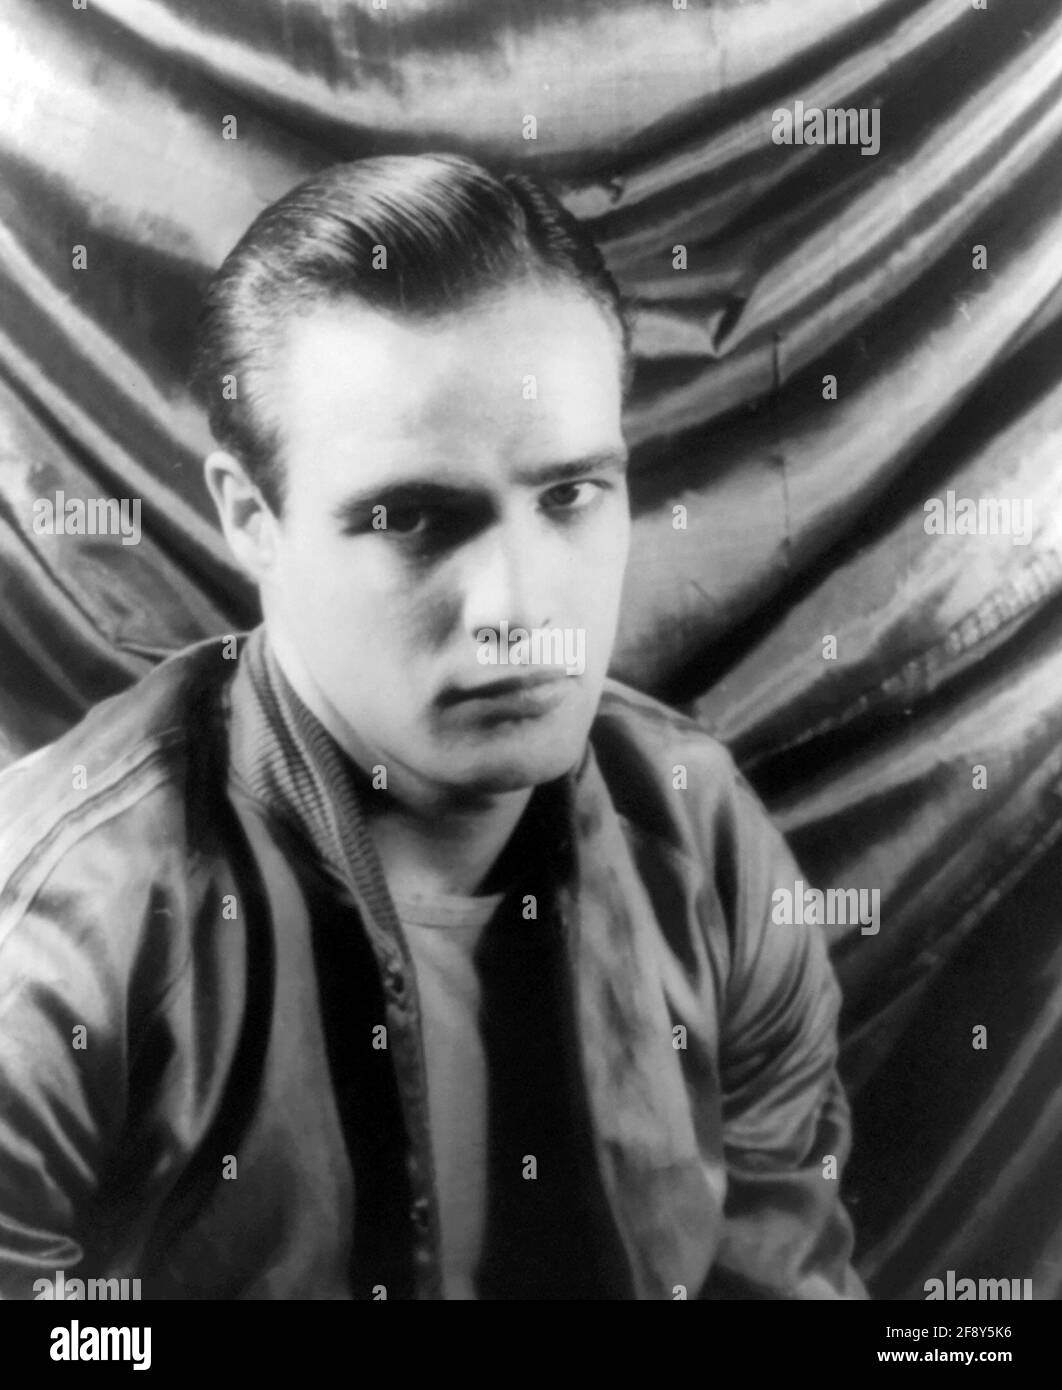 Marlon Brando. Porträt des amerikanischen Schauspielers und Regisseurs Marlon Brando Jr. (1924-2004) in „A Streetcar named Desire“. Foto von Carl van Vechten, 1948 Stockfoto